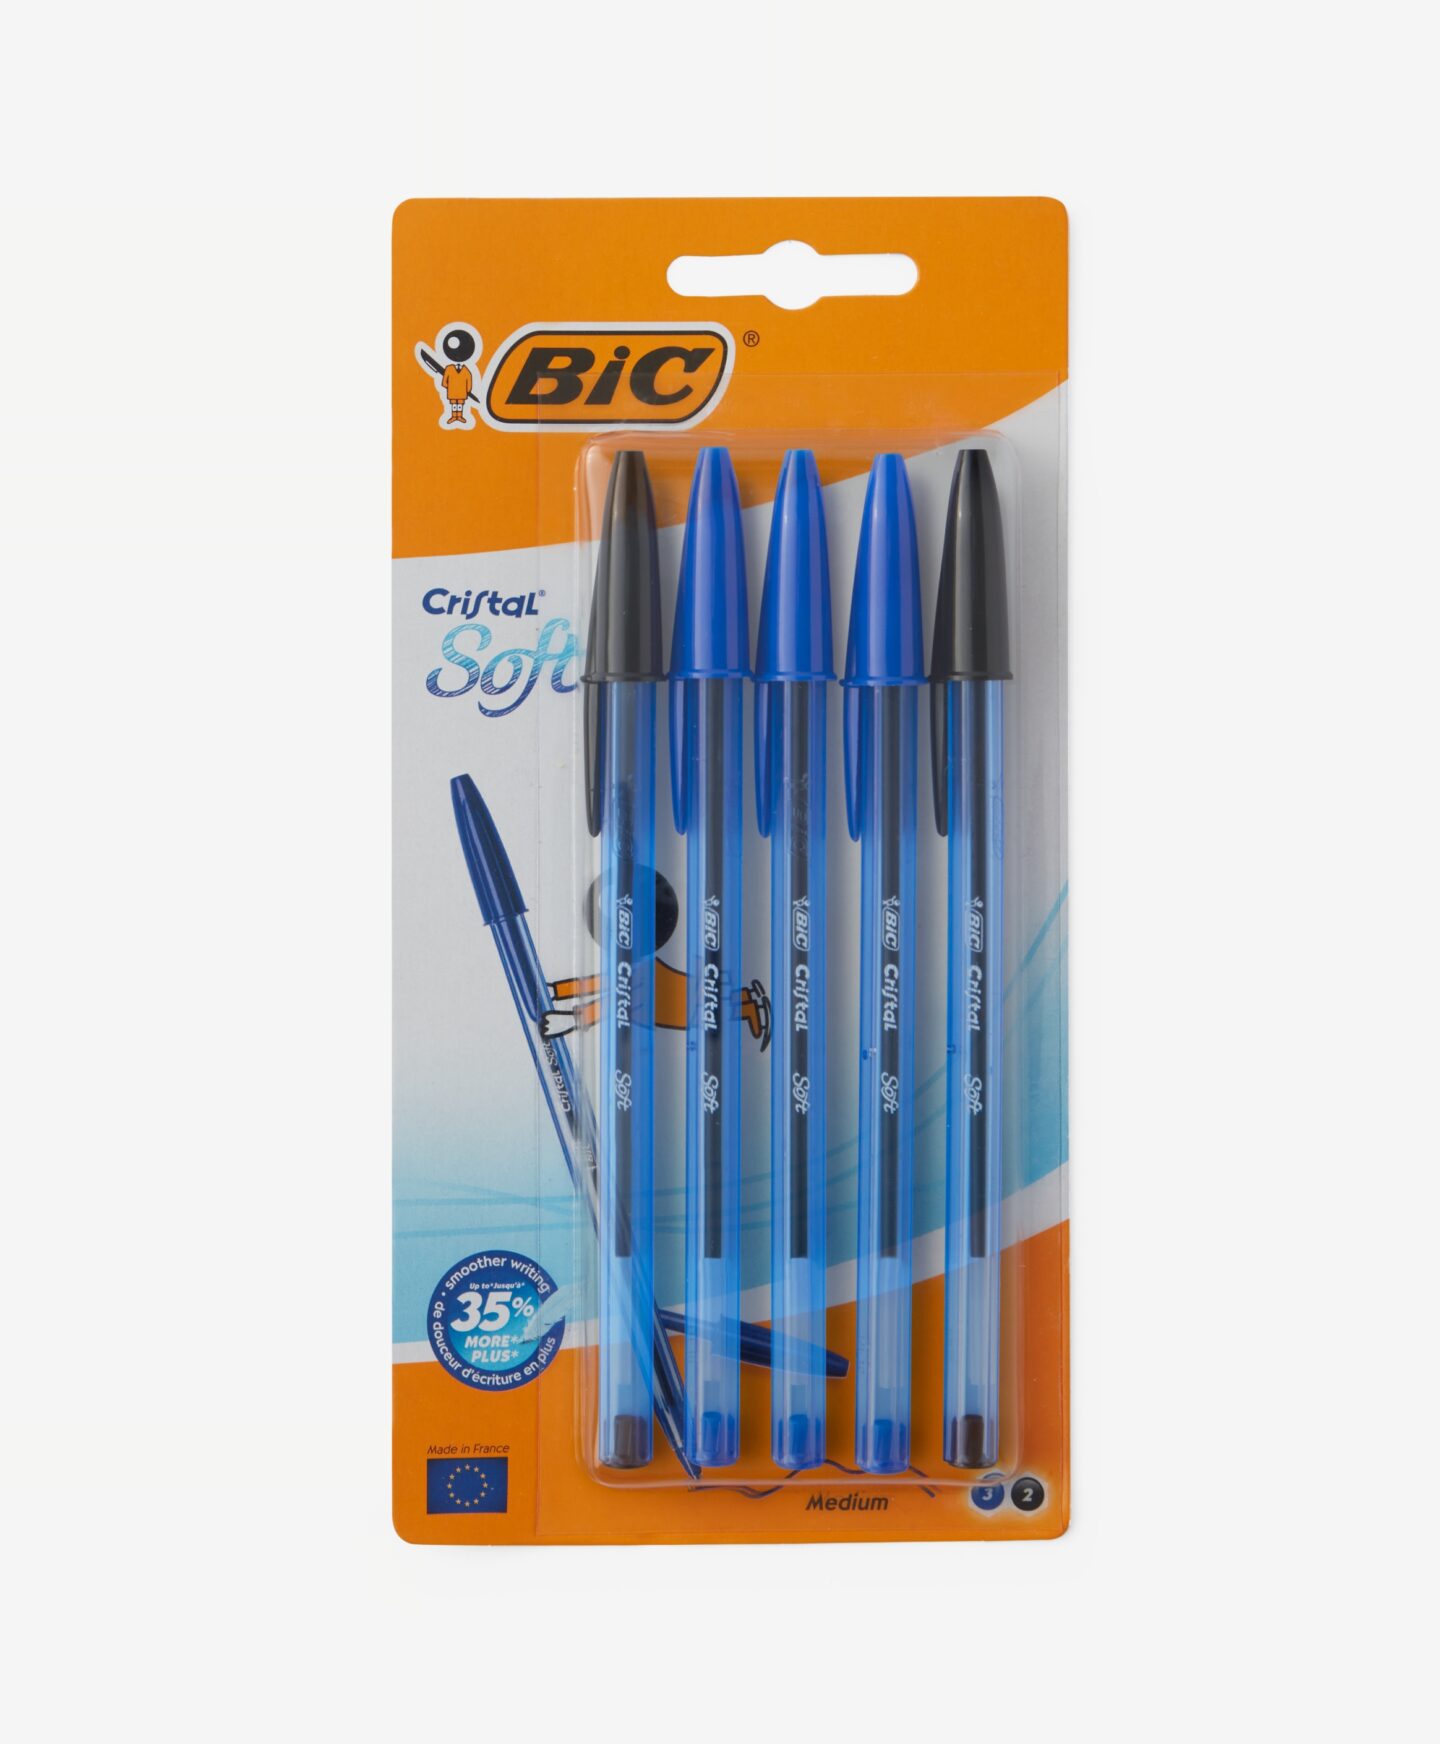 Długopisy BiC® Cristal 5 szt z tuszem Easy Glide w zestawie niebieskie i czarne, kolor czarny, granatowy